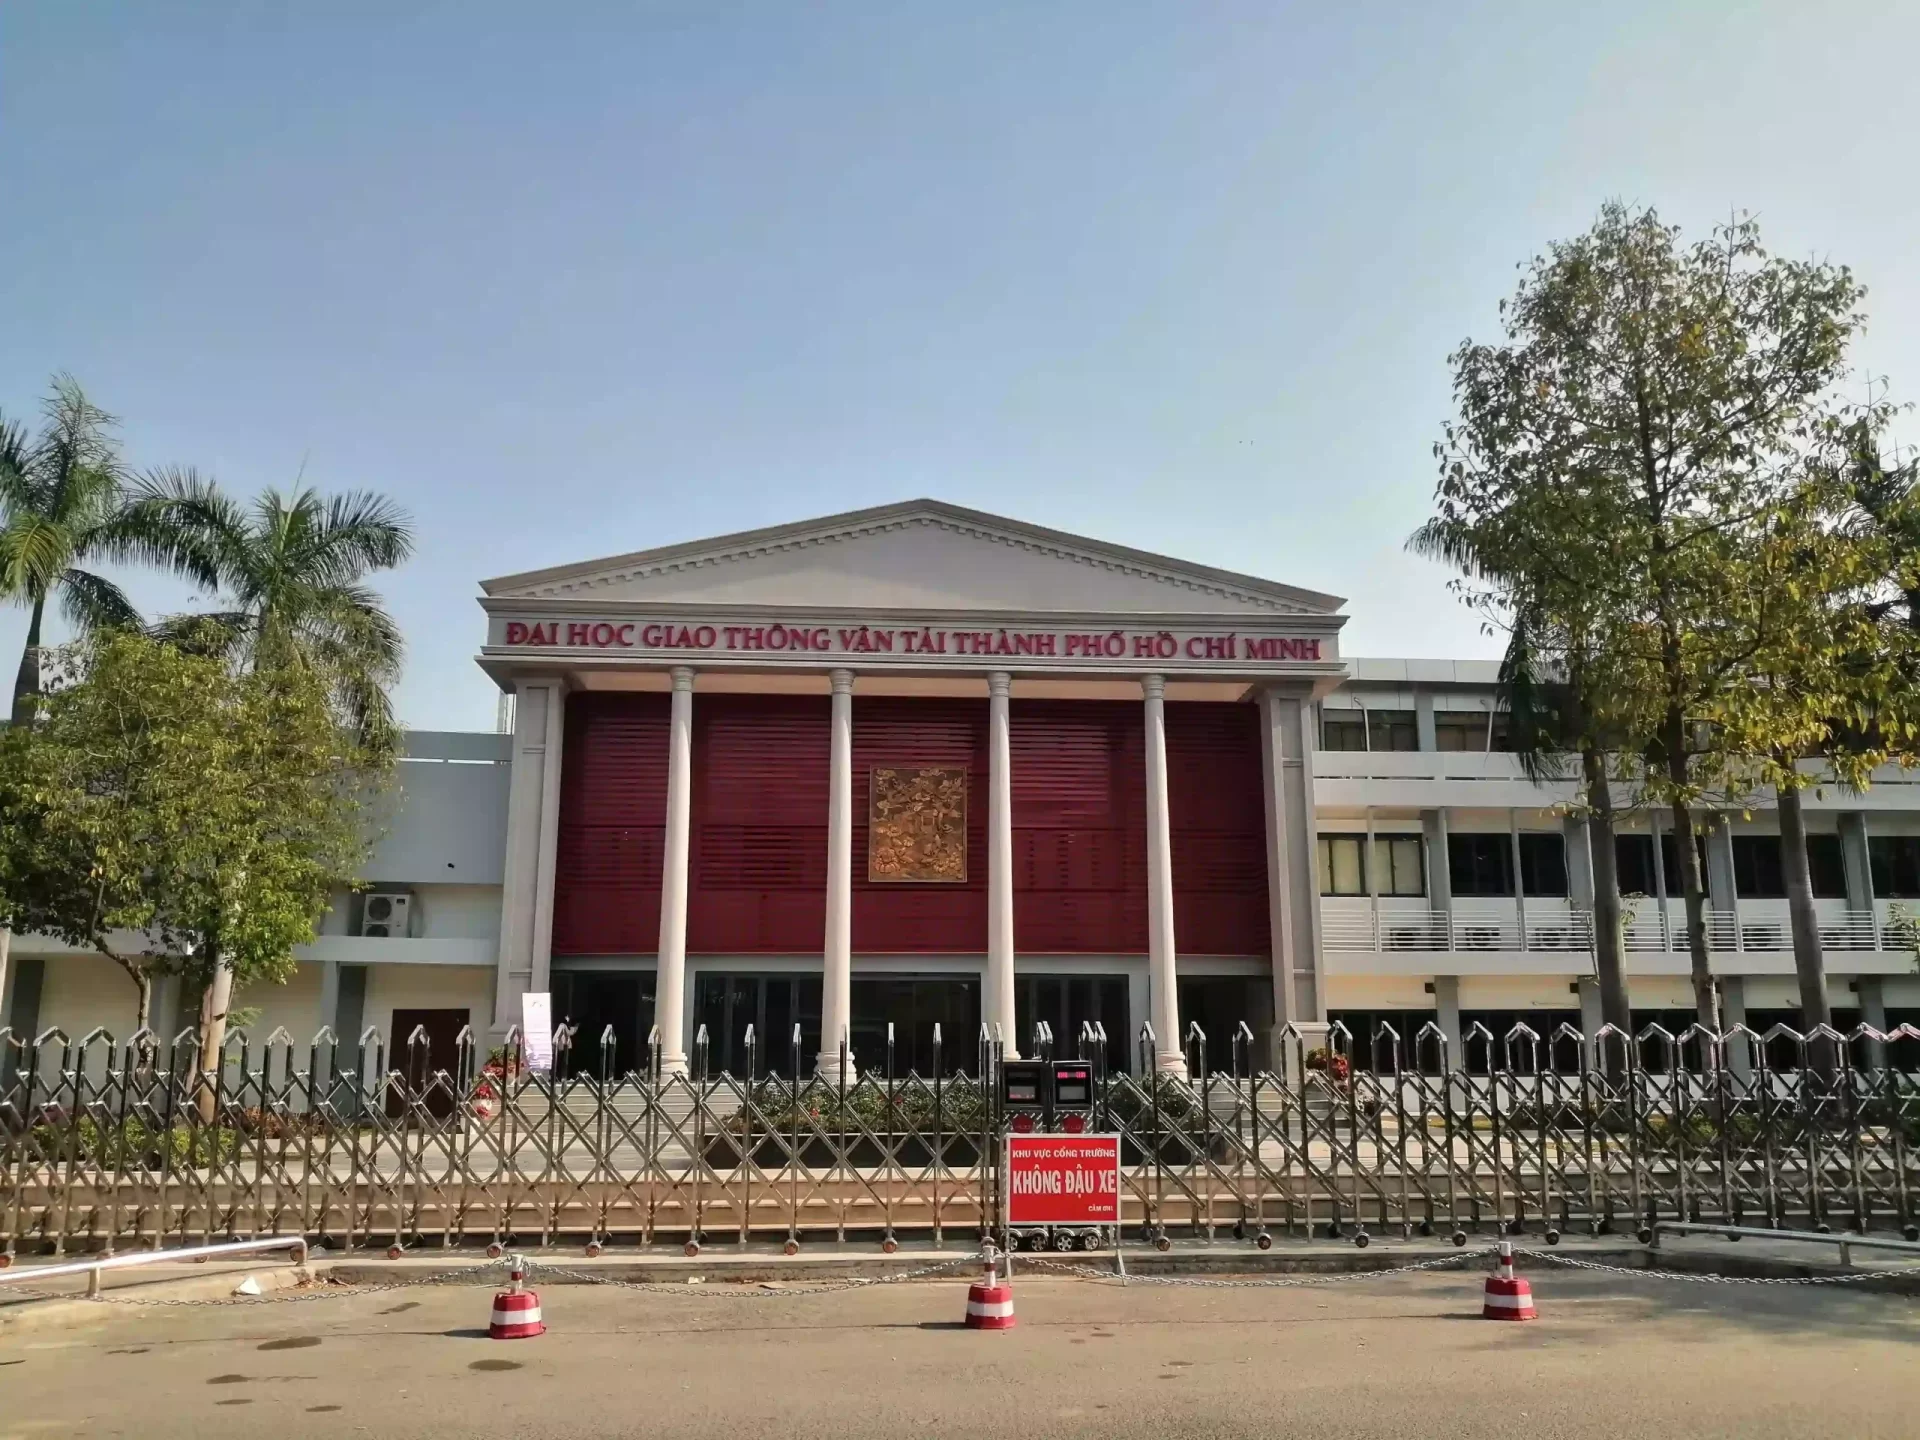 Đại học Giao thông vận tải Thành phố Hồ Chí Minh